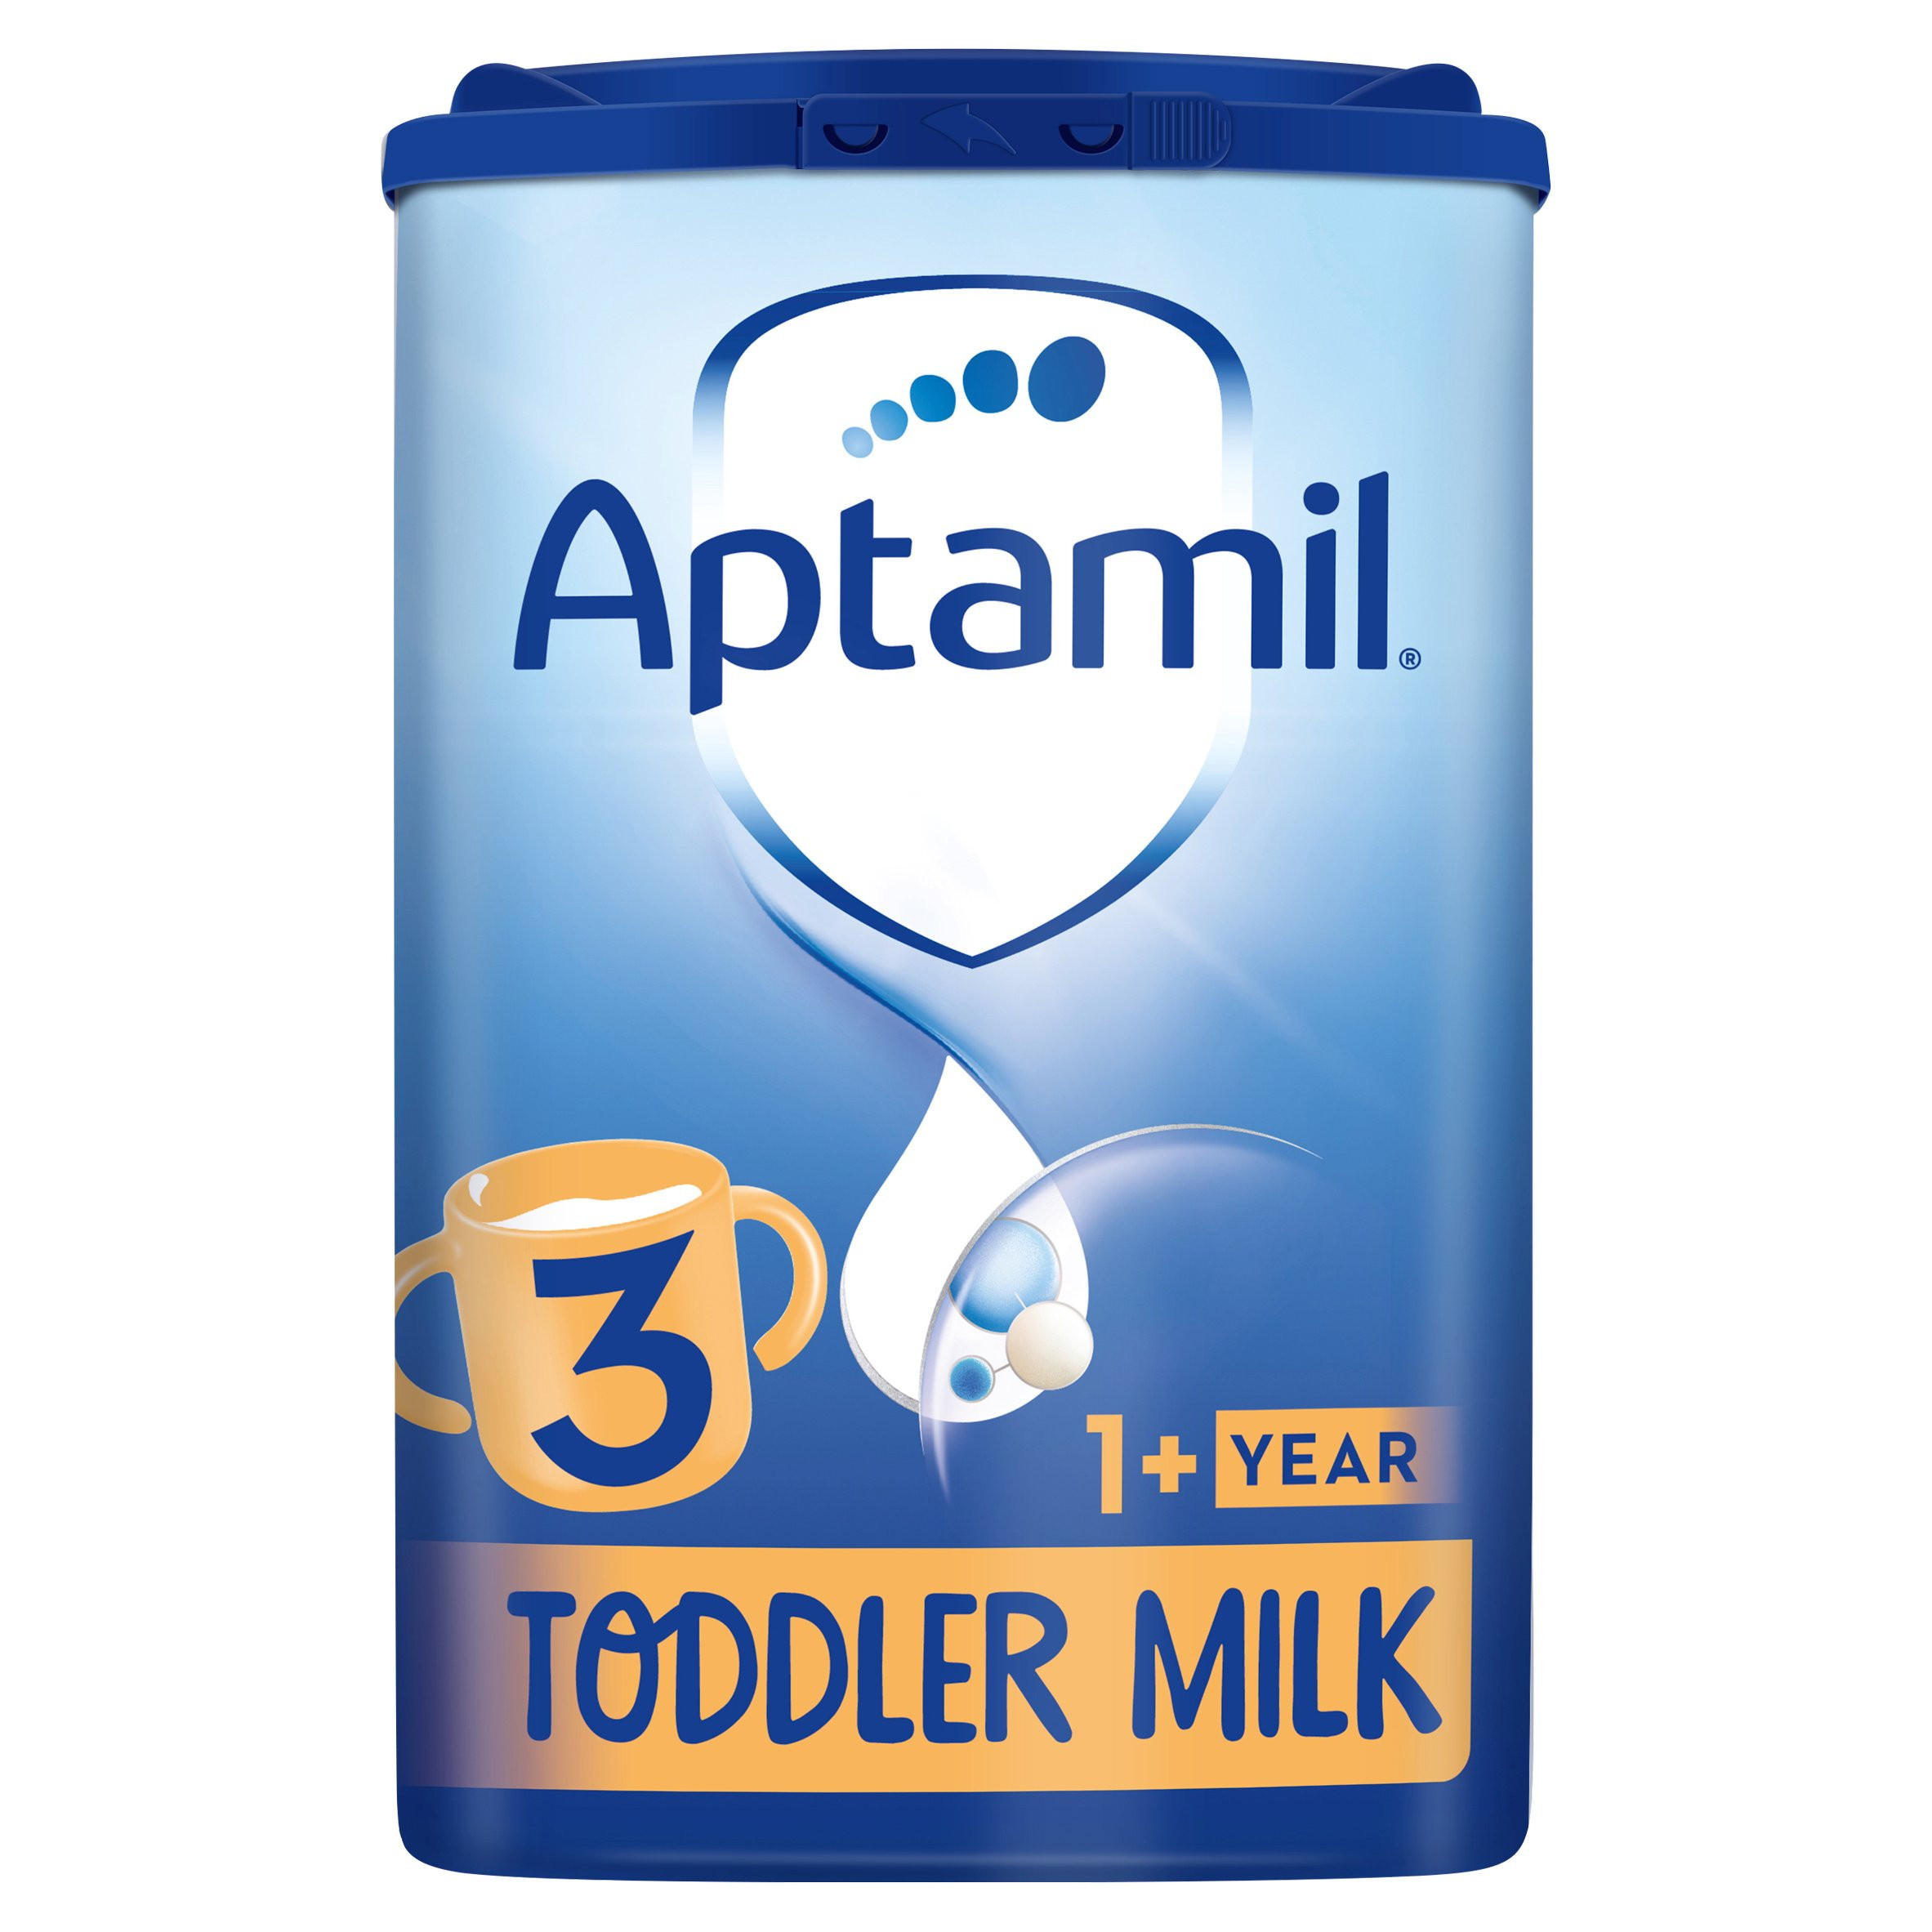 Aptamil Toddler Milk 3 1+ Year 800g, Baby Food